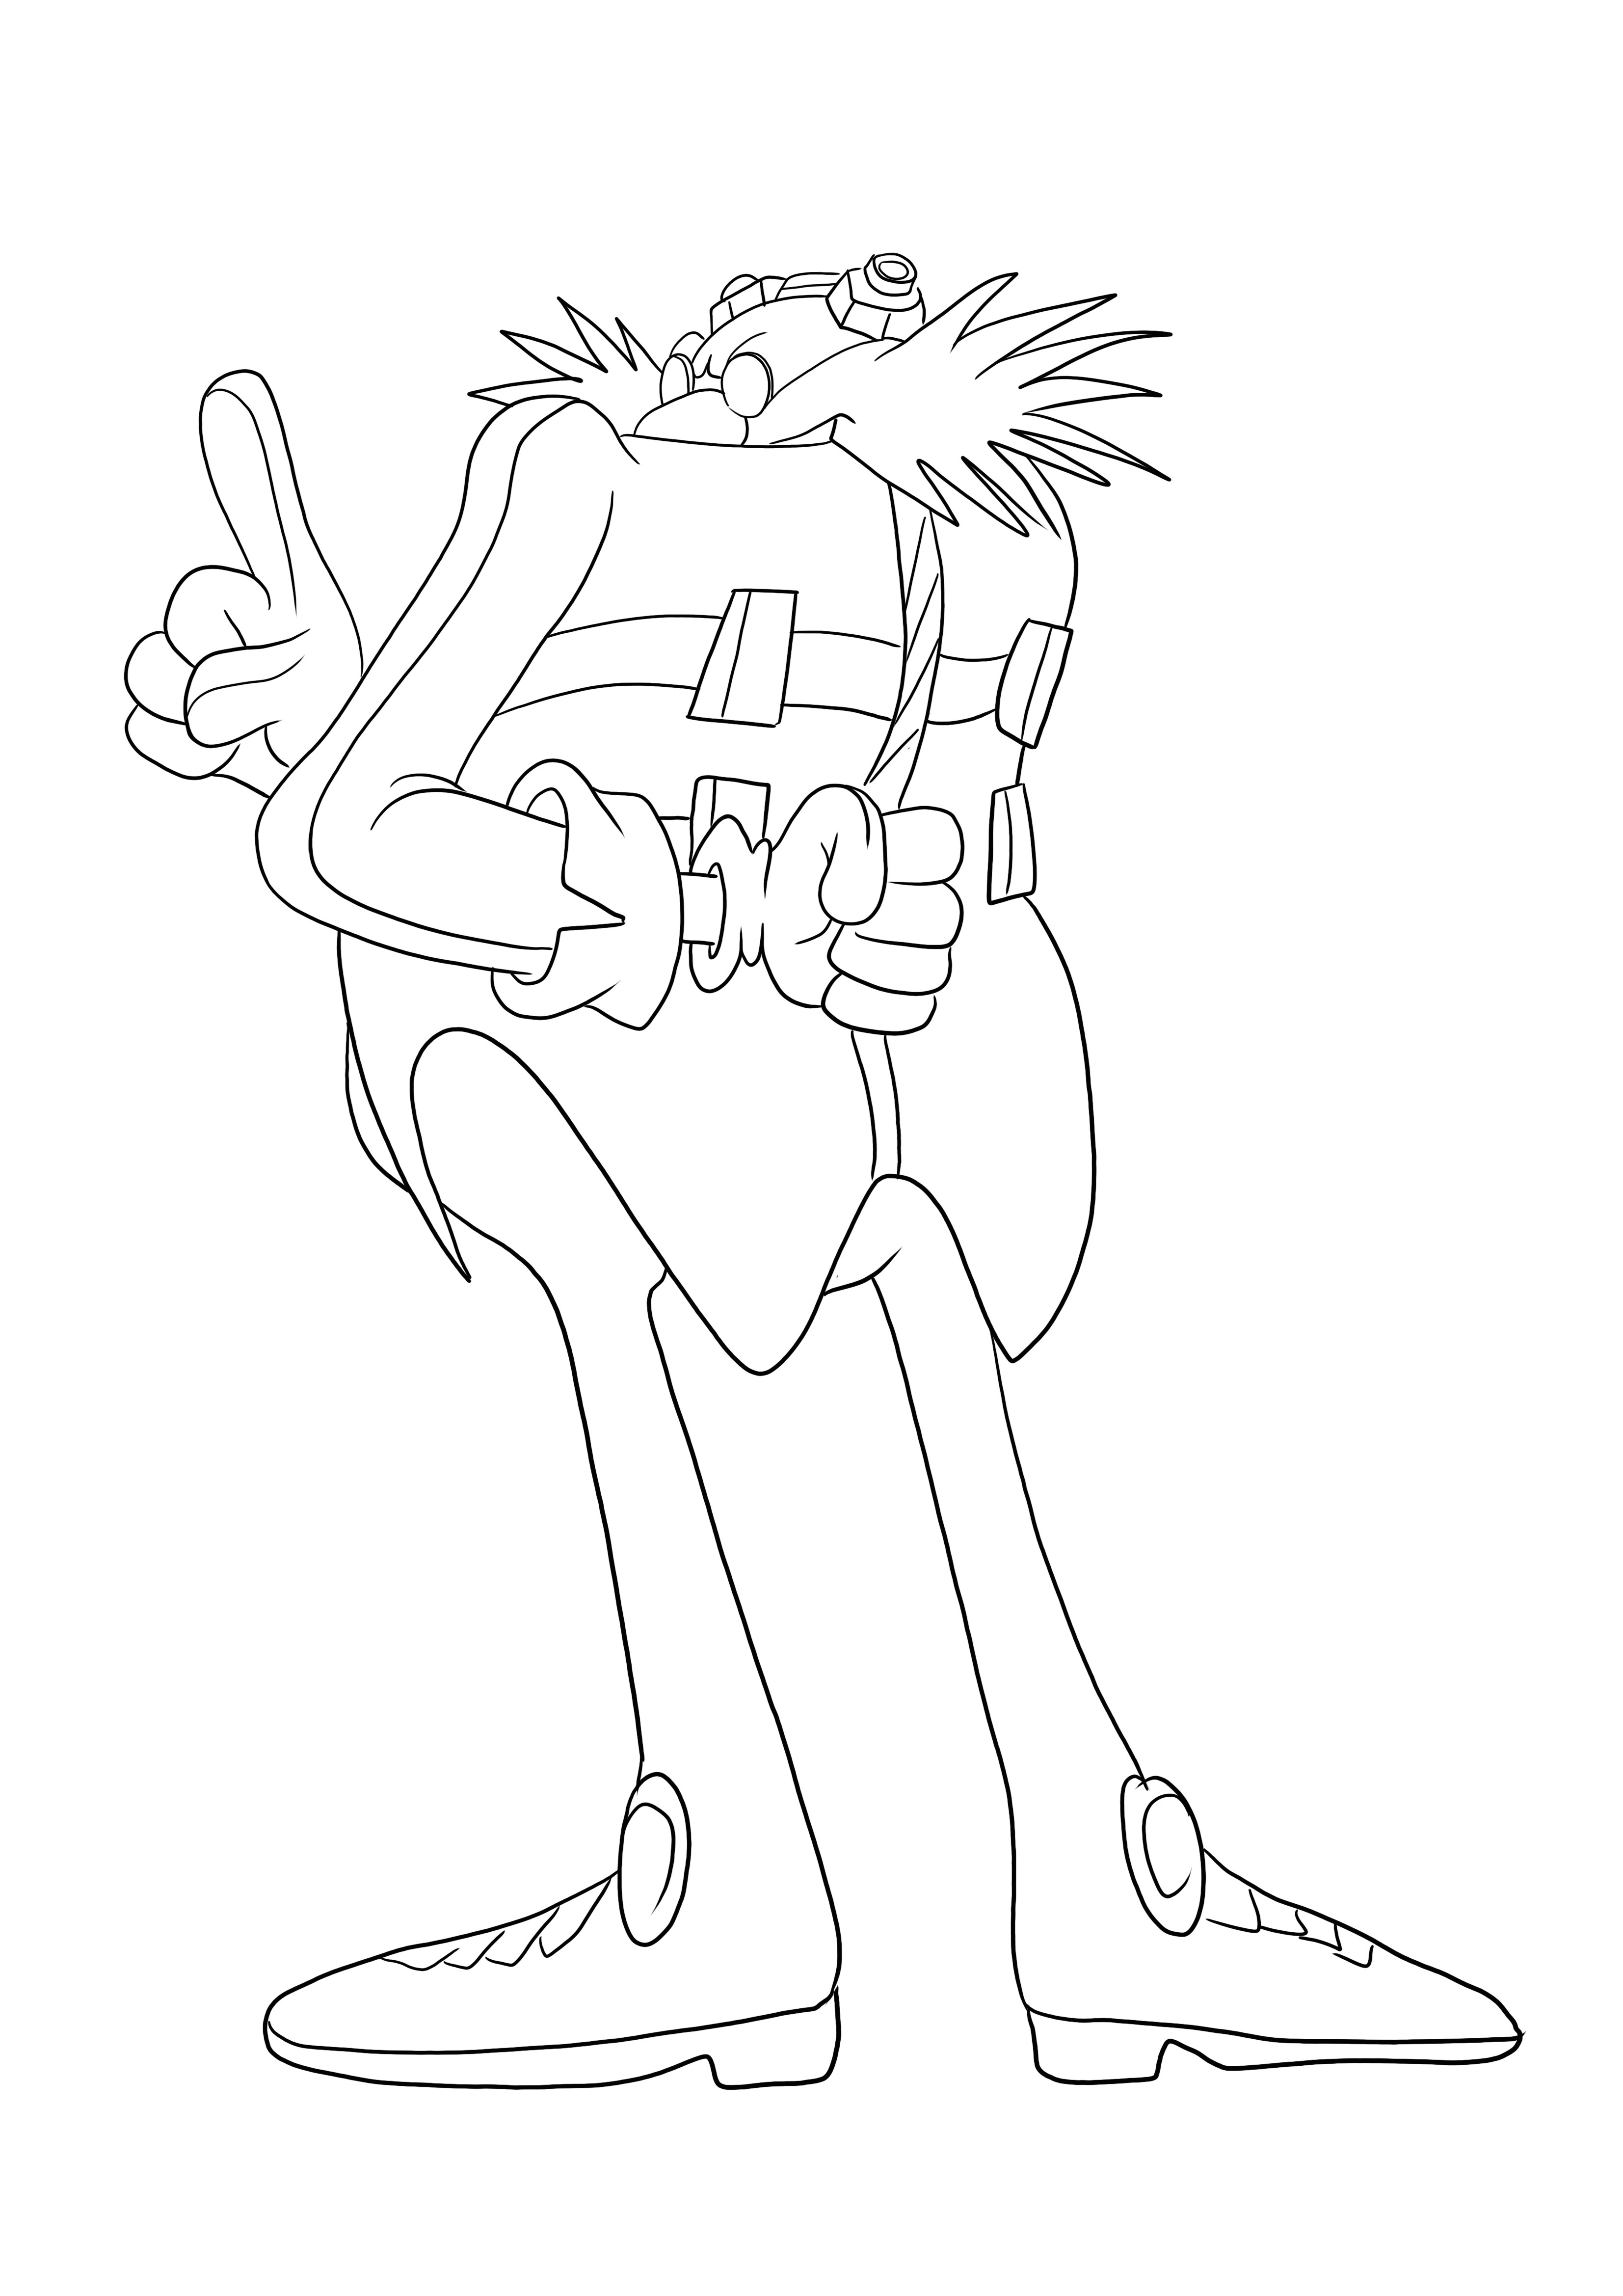 Aquí está el Dr. Eggman de la serie Sonic gratis para imprimir y fácil de colorear